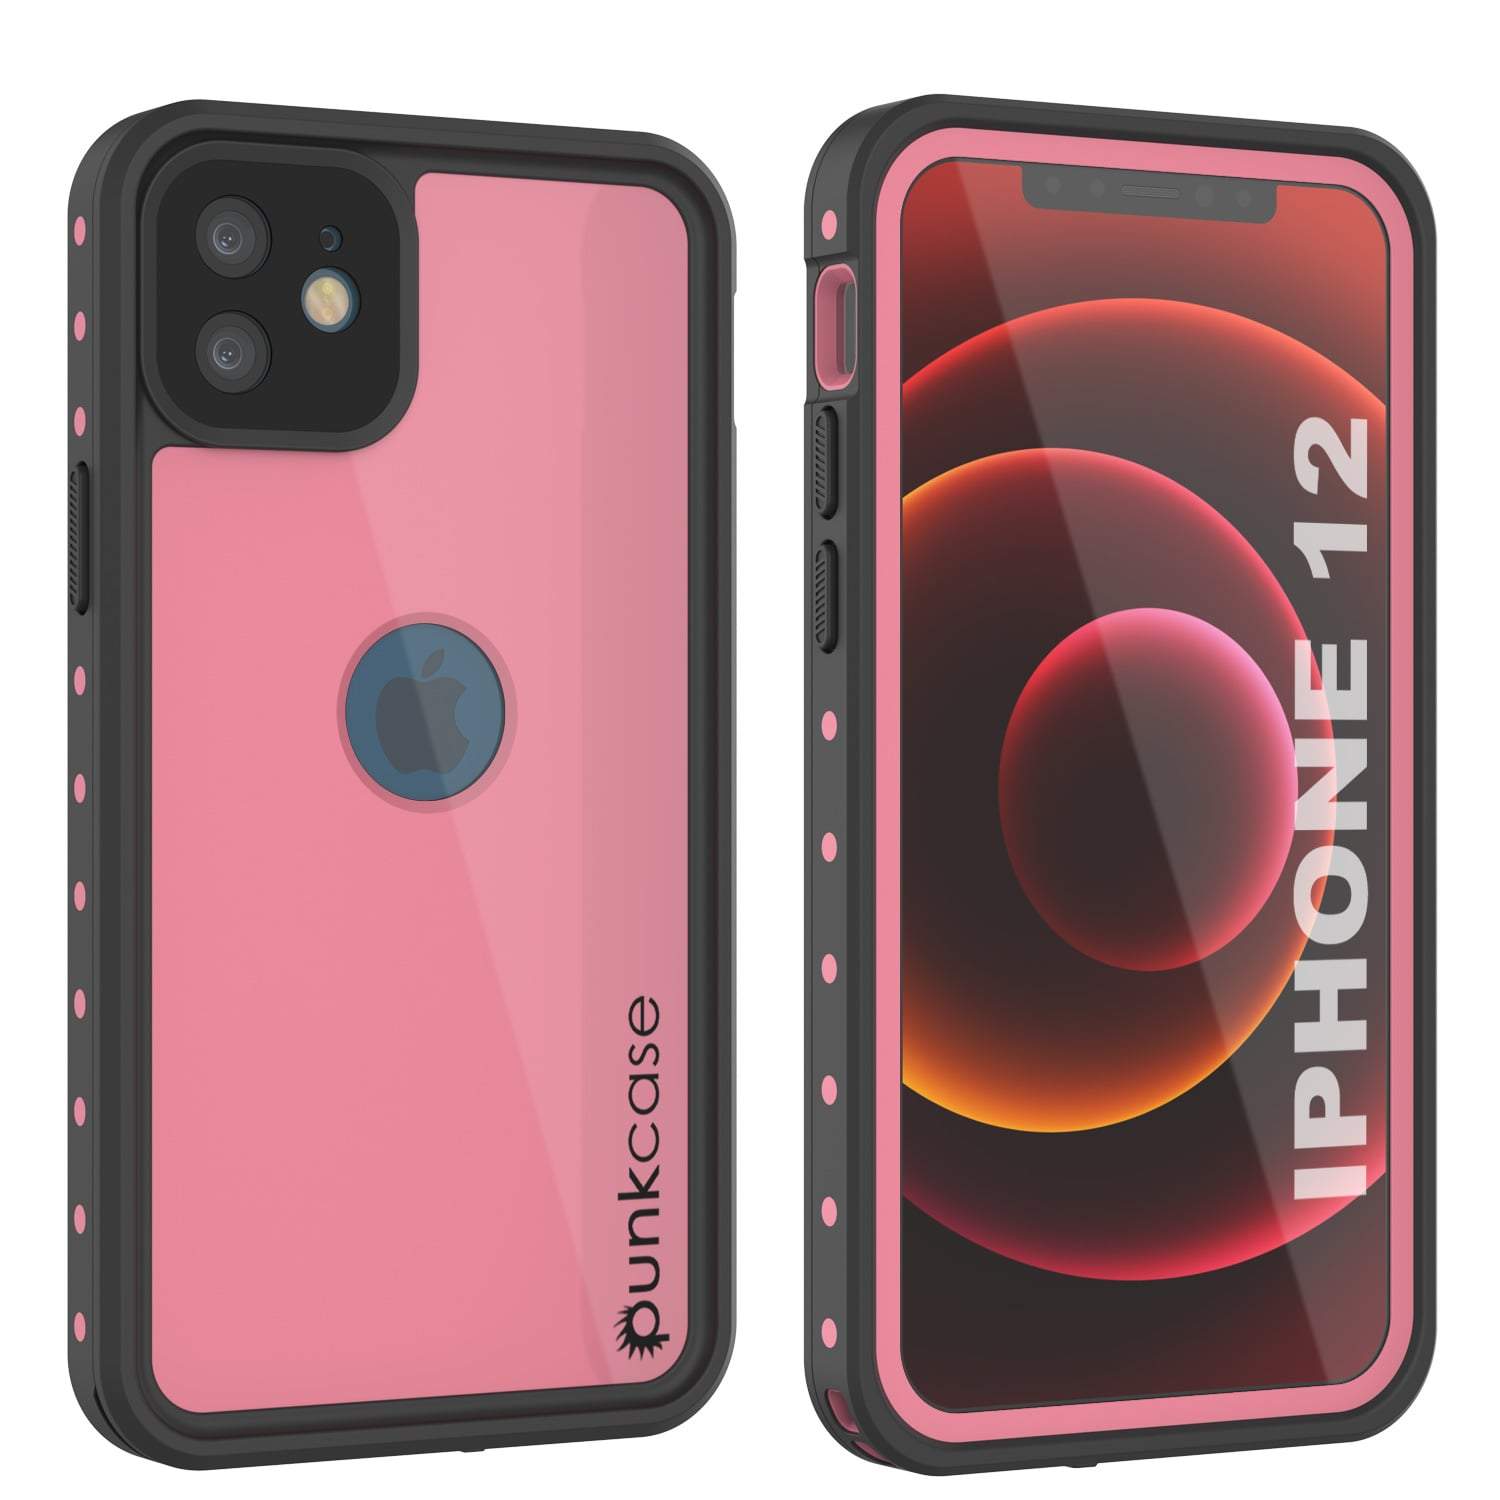 iPhone 12 Waterproof IP68 Case, Punkcase [Pink] [StudStar Series] [Slim Fit] [Dirtproof] (Color in image: Pink)